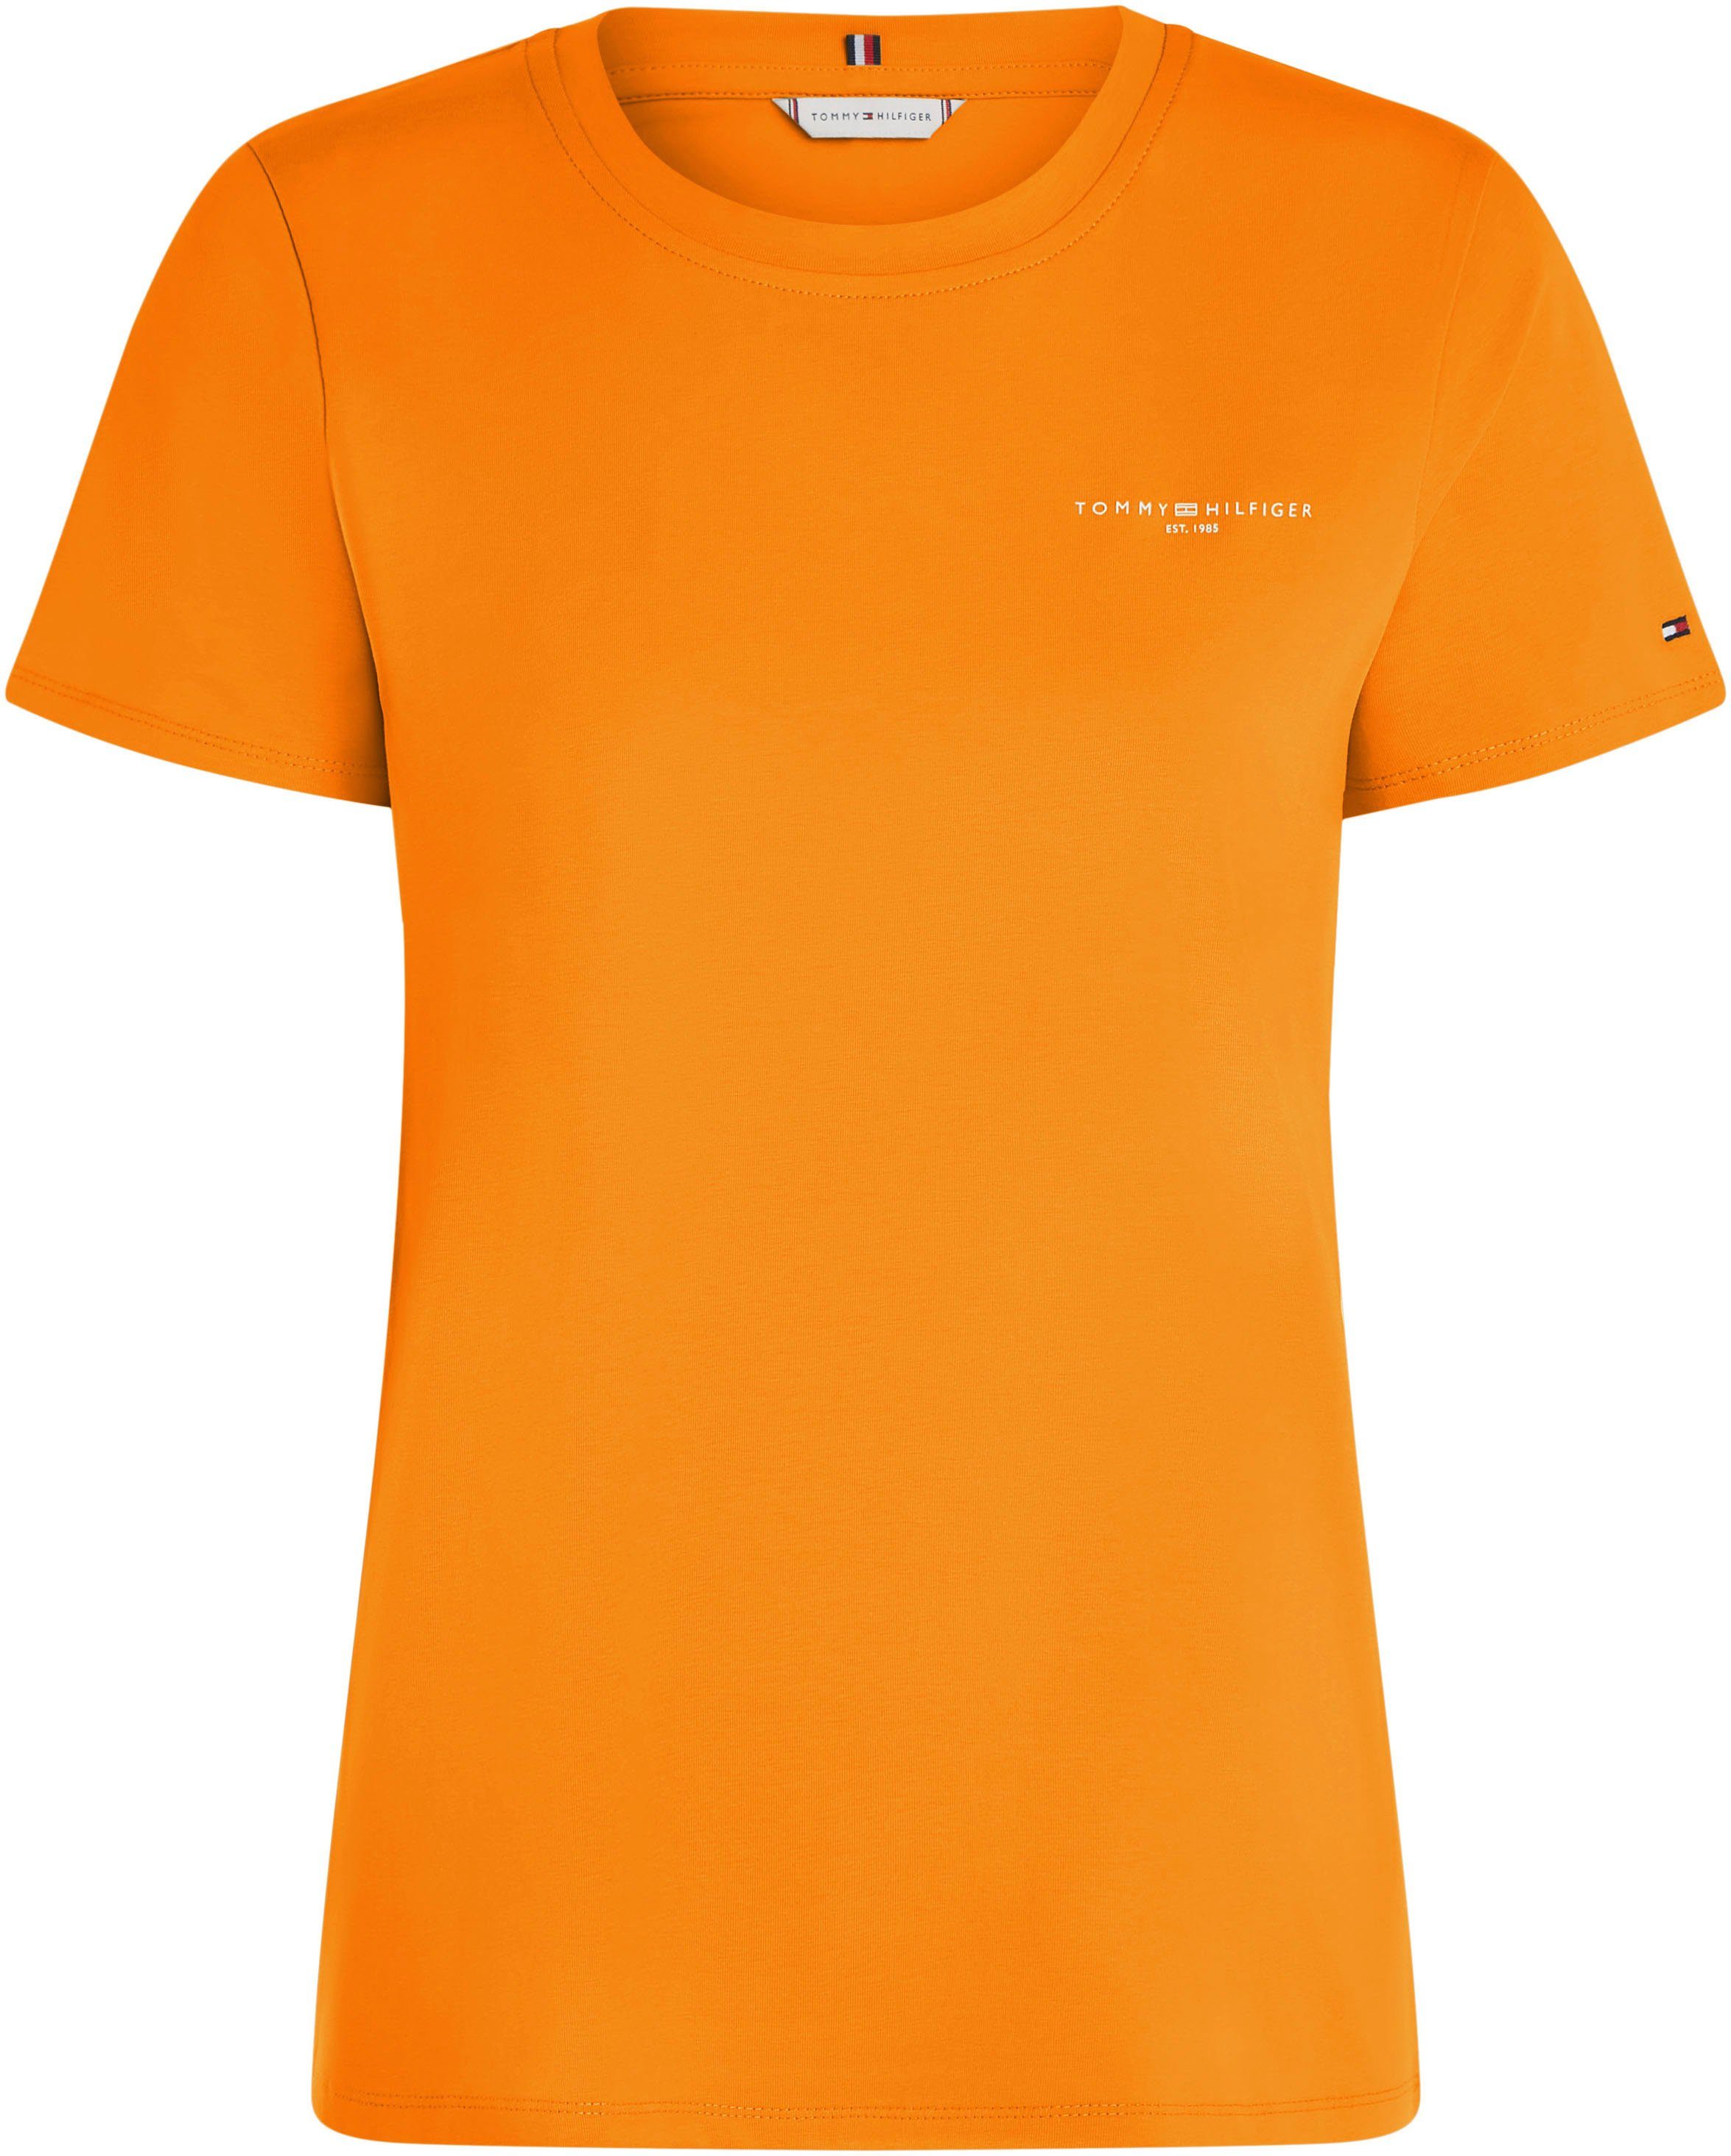 Damen online kaufen OTTO | Orange T-Shirts